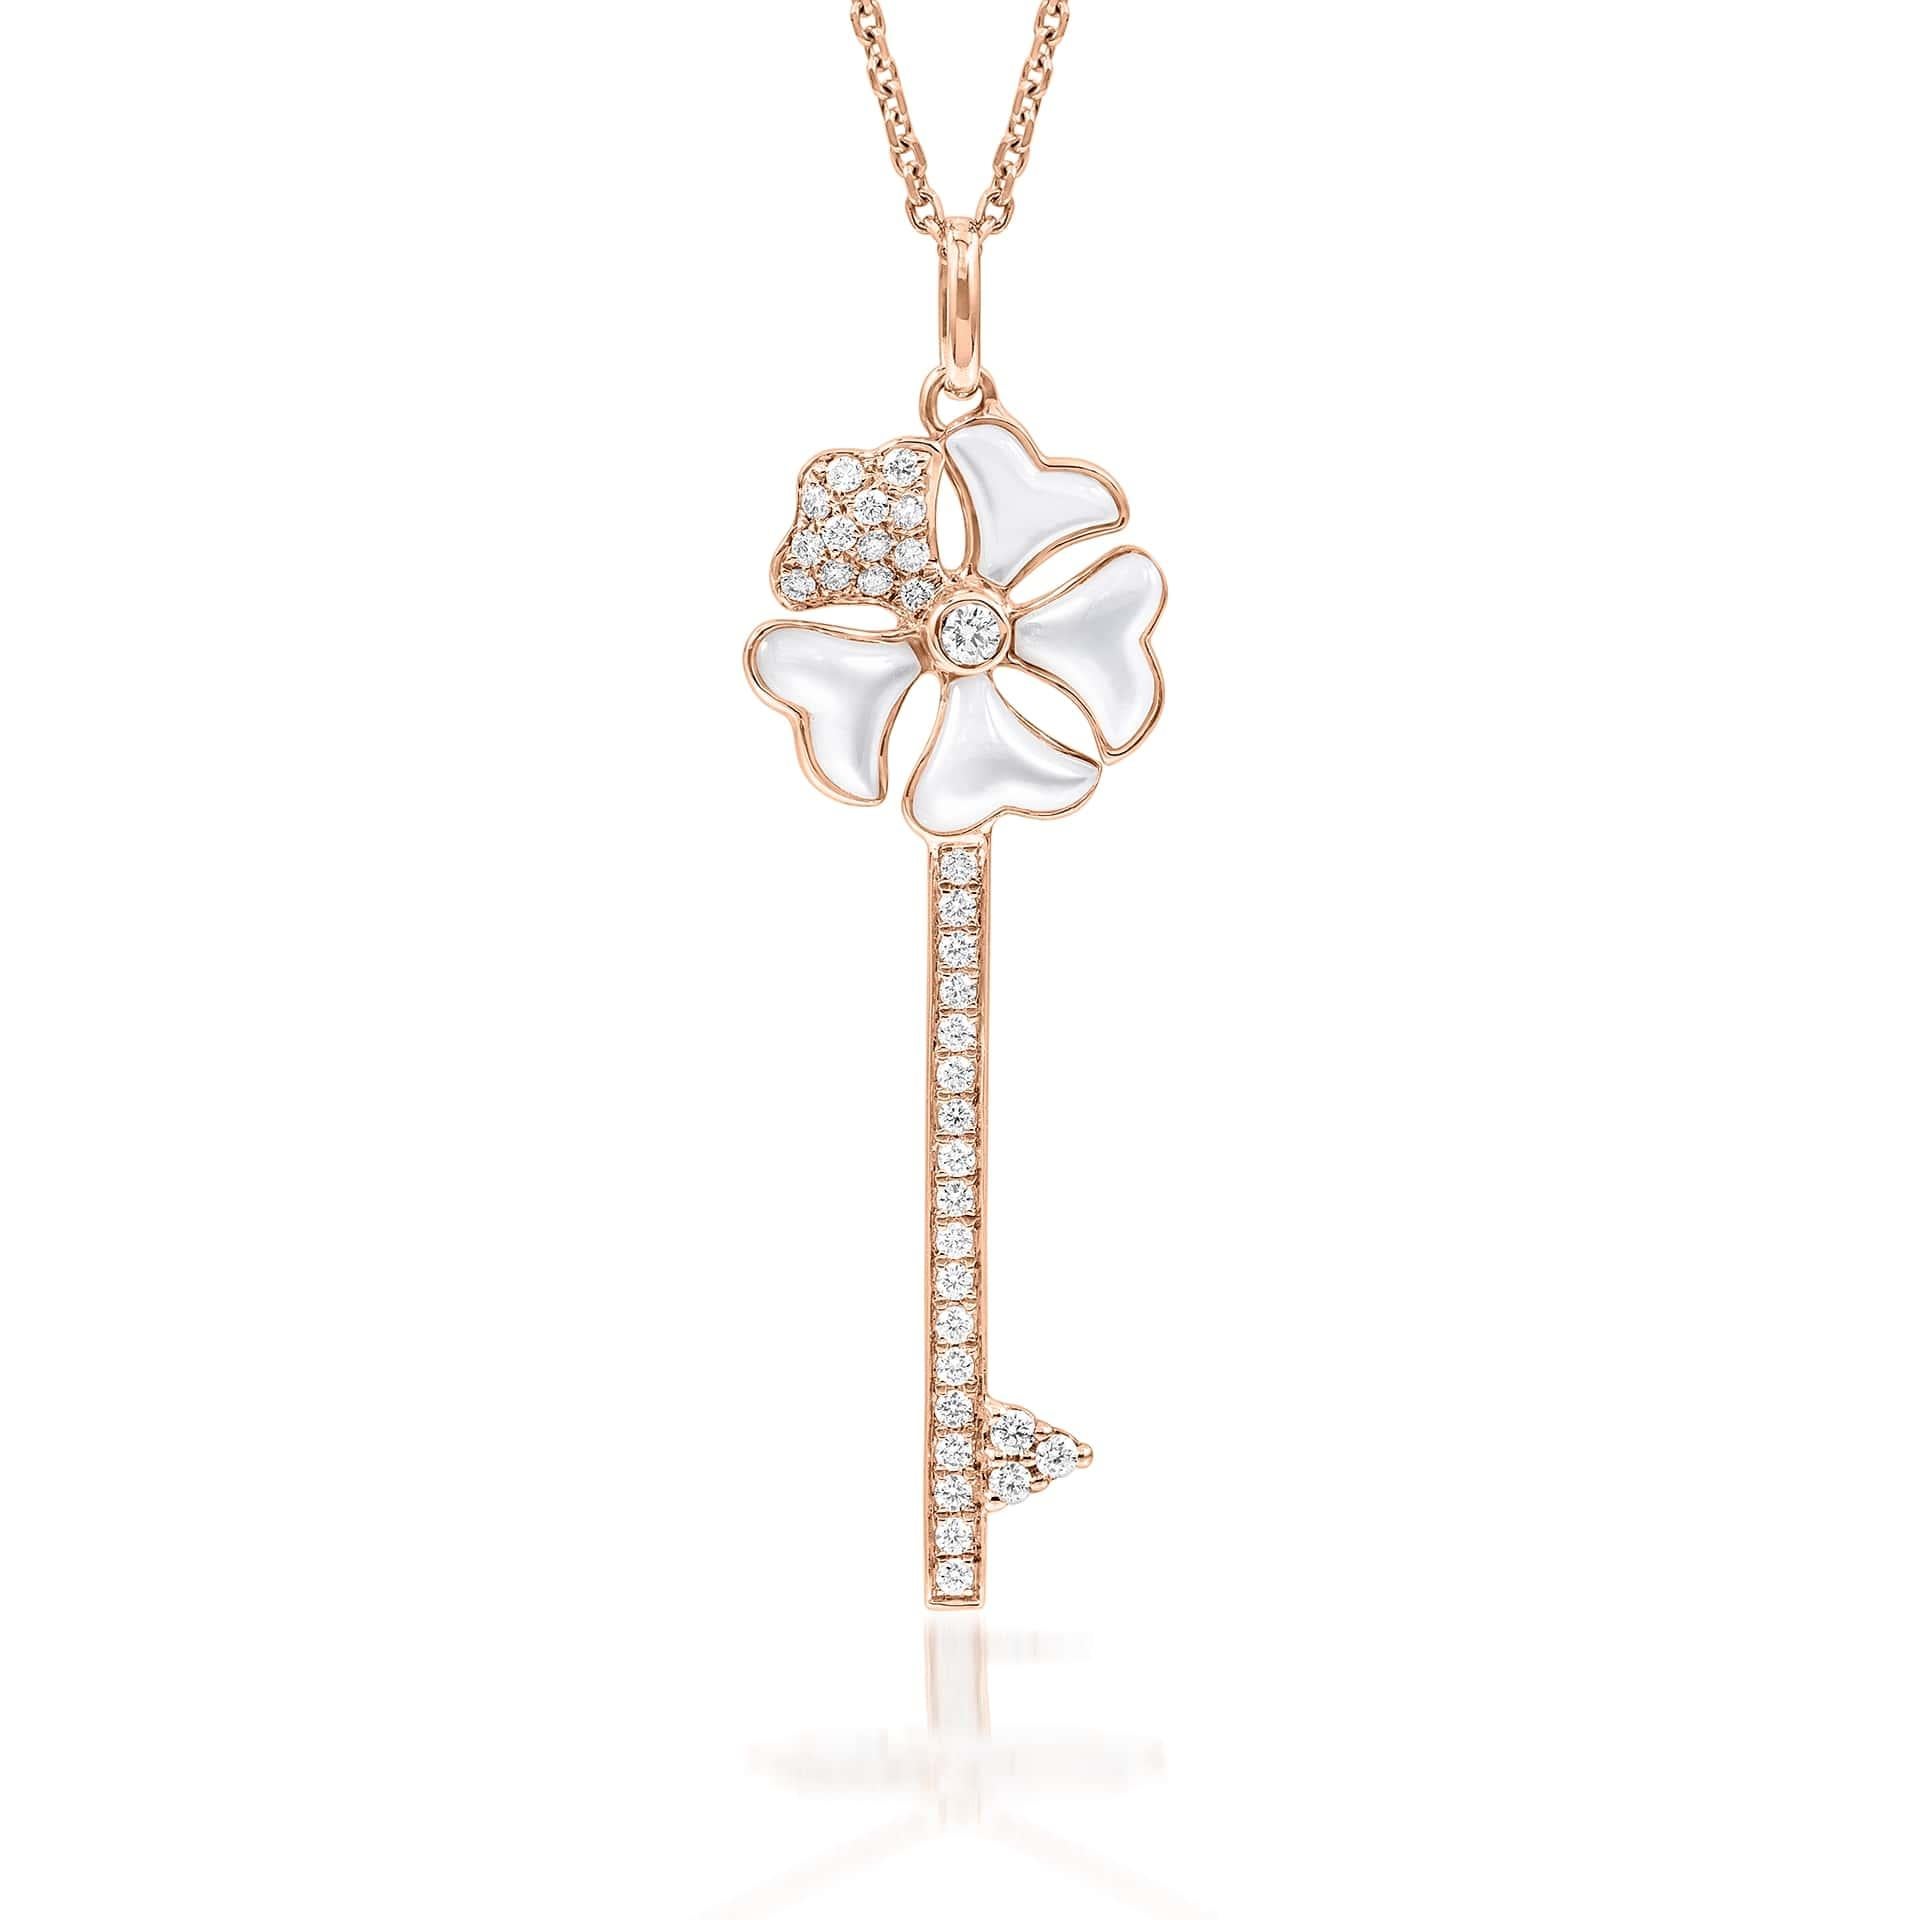 Bloom Diamant- und Perlmutt-Schlüssel-Halskette aus 18 Karat Roségold

Inspiriert von den exquisiten Blütenblättern des alpinen Fingerkrauts, verbindet die Kollektion Bloom den Reichtum von Diamanten und Edelmetallen mit der leichten Vielseitigkeit